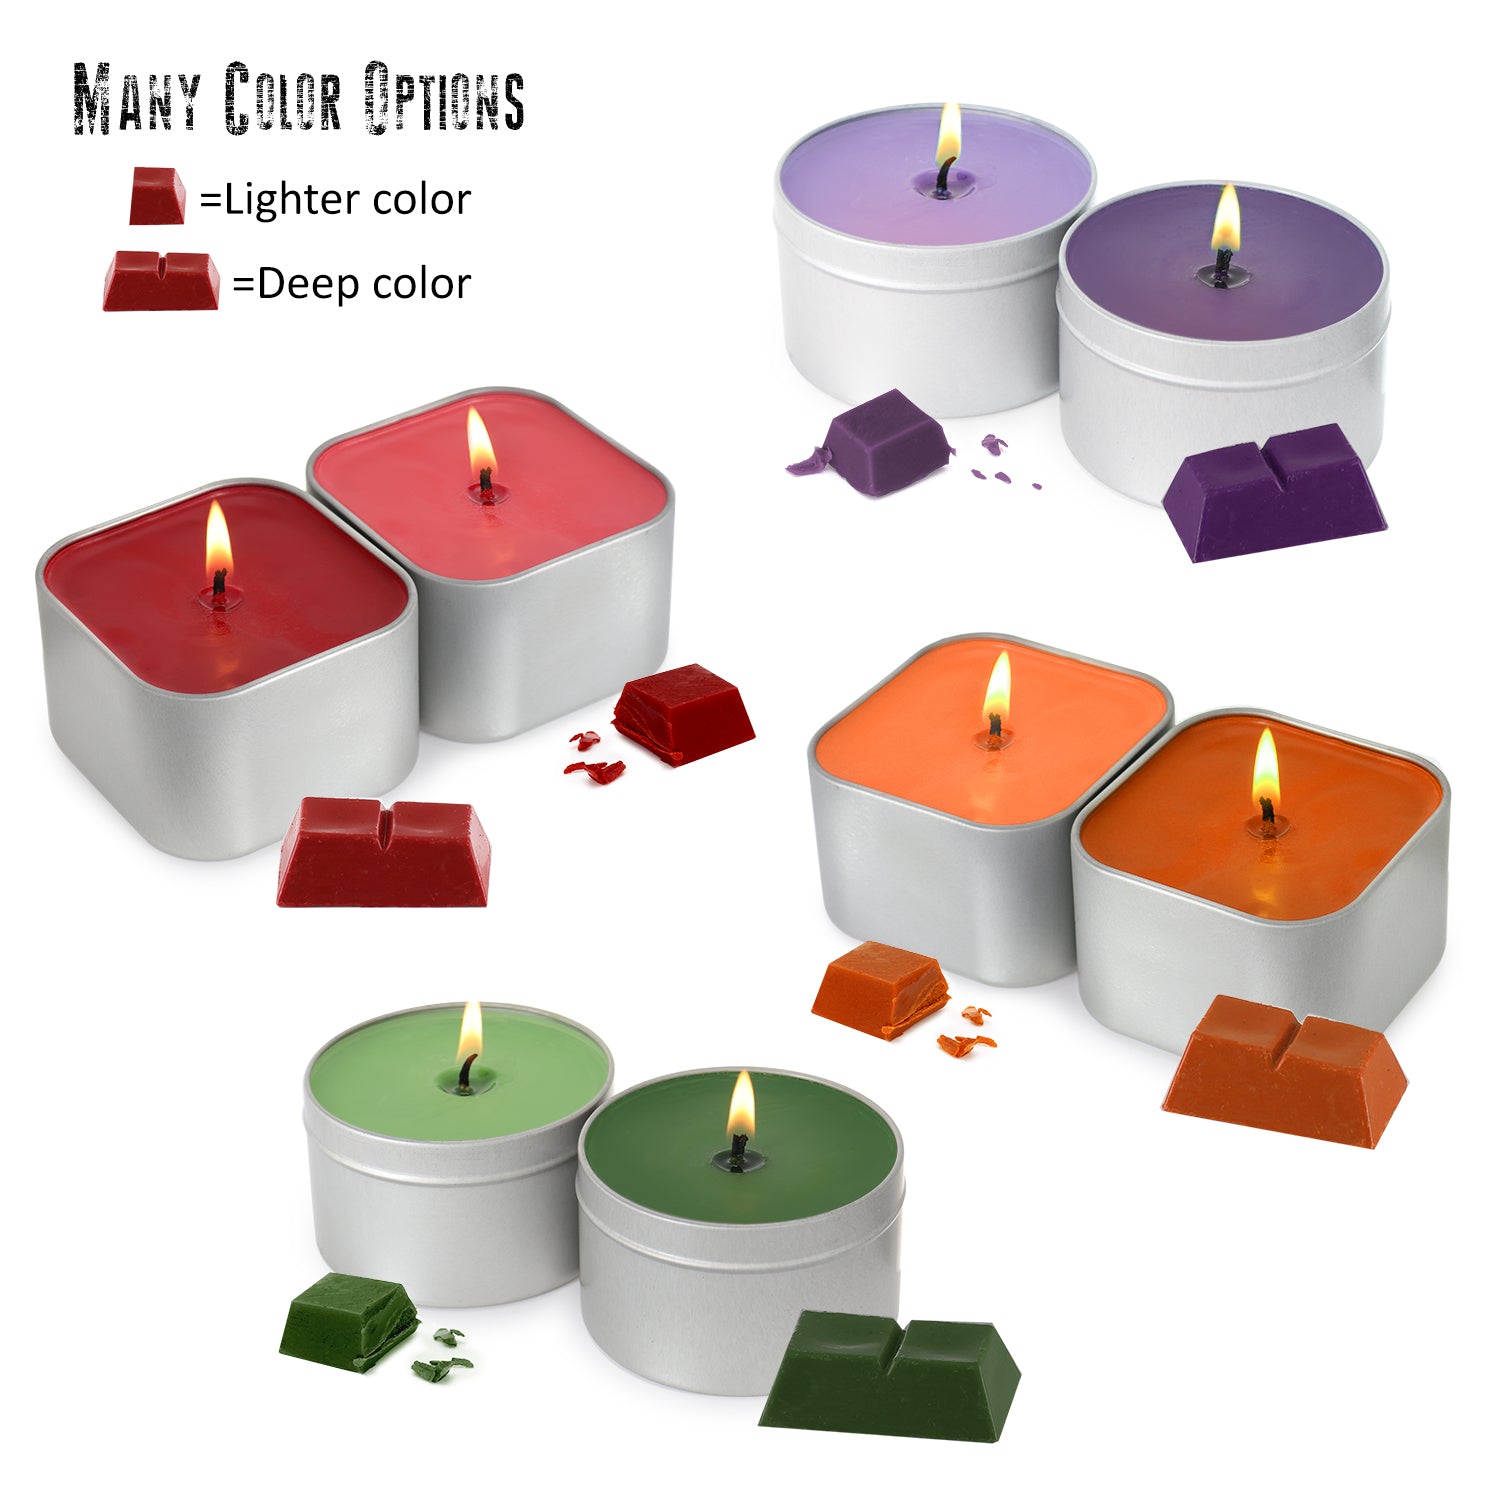 CraftZee Kit de fabricación de velas para adultos principiantes – Kit de  fabricación de velas de soja incluye cera de soja, aromas, mechas, tintes